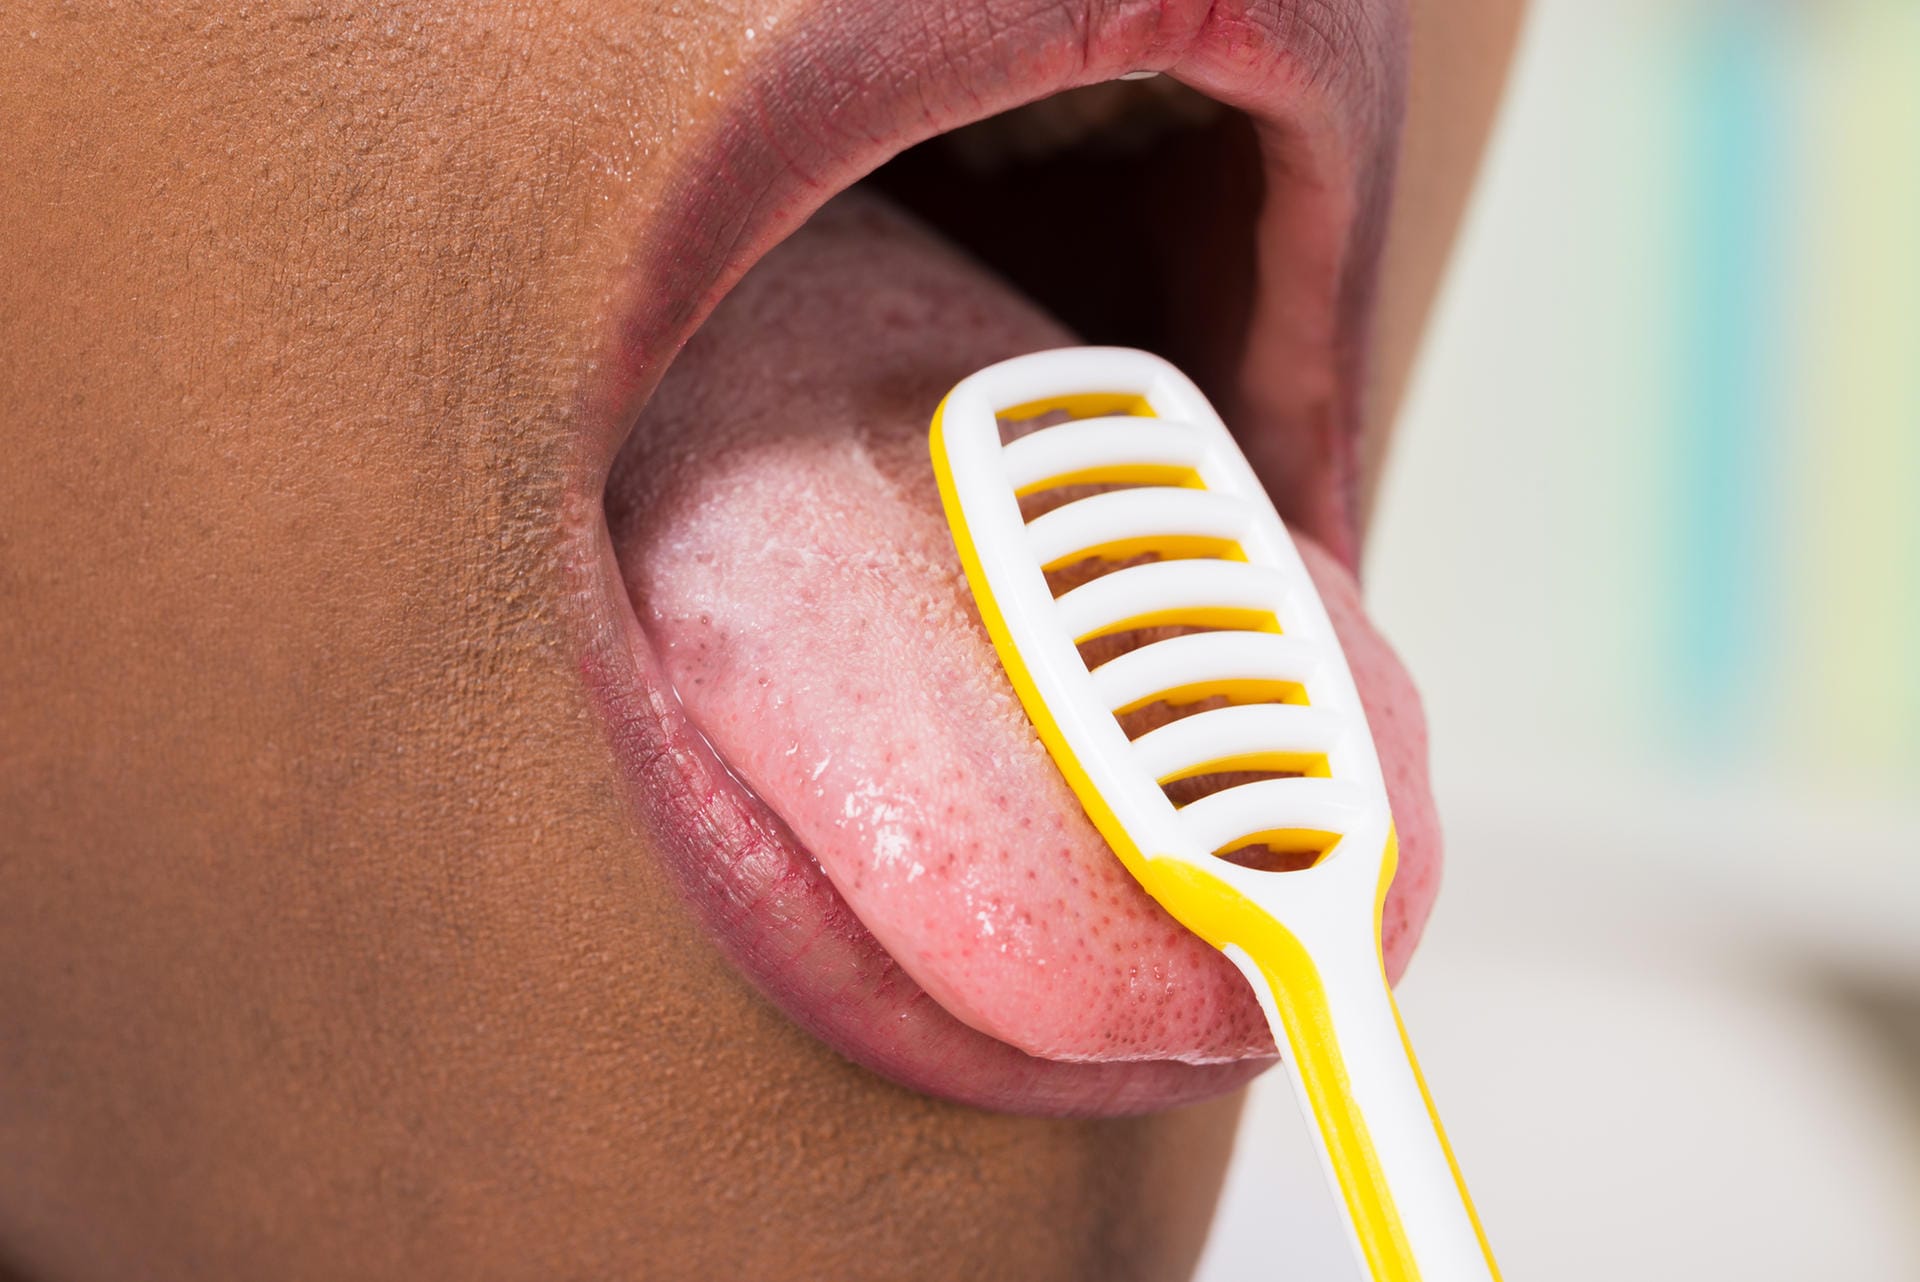 Zunge reinigen: Belag auf der Zunge ist manchmal der Auslöser für Mundgeruch. Ein Zungenschaber kann Abhilfe schaffen.